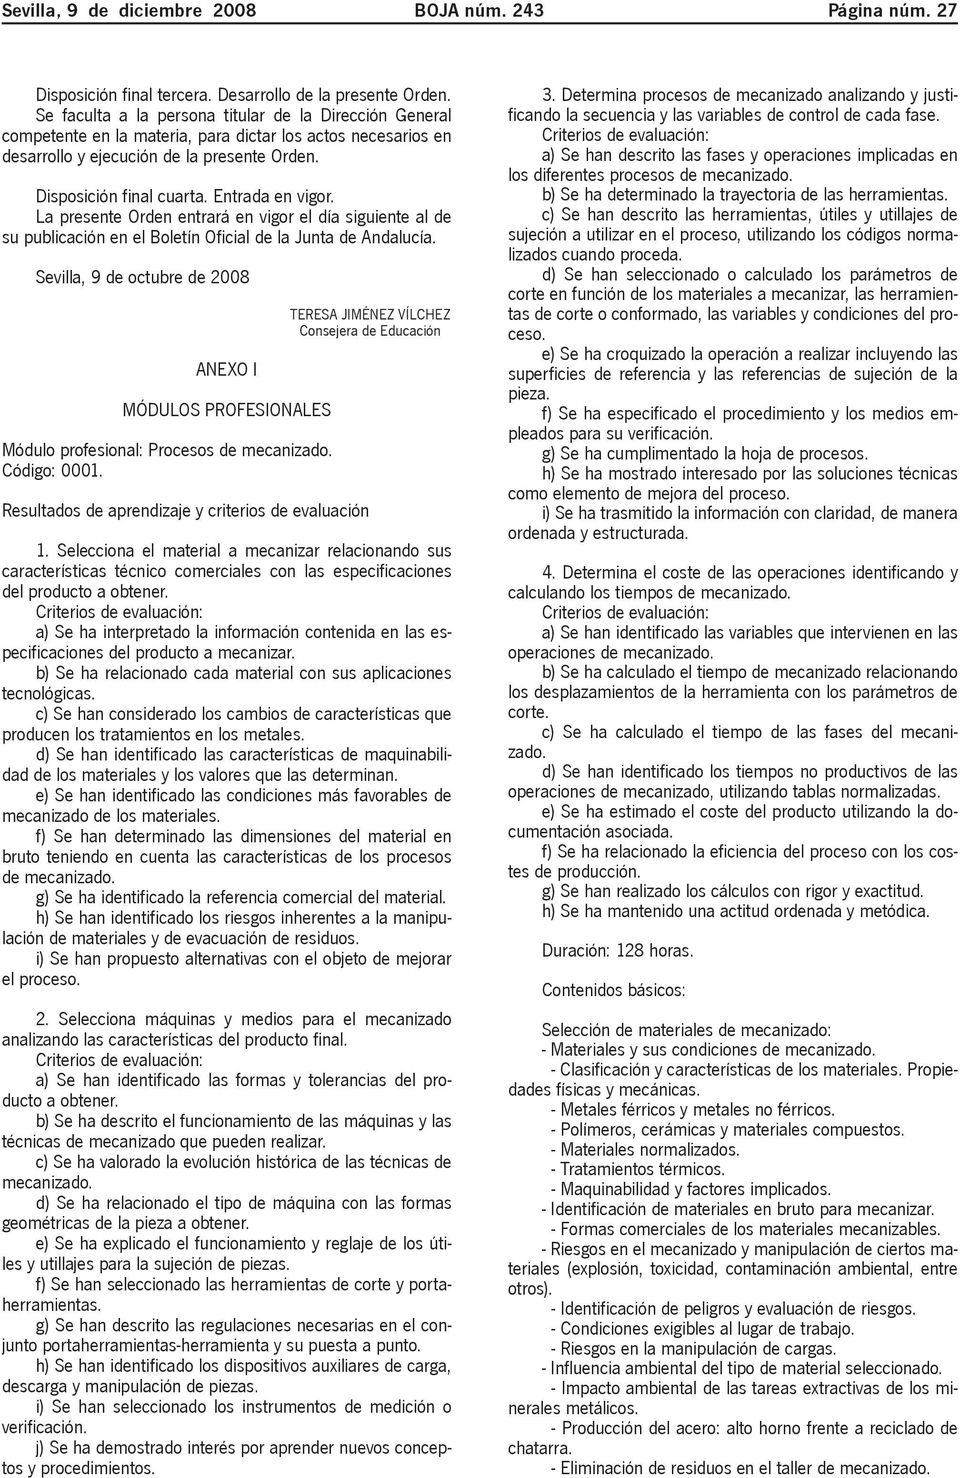 Entrada en vigor. La presente Orden entrará en vigor el día siguiente al de su publicación en el Boletín Oficial de la Junta de Andalucía.